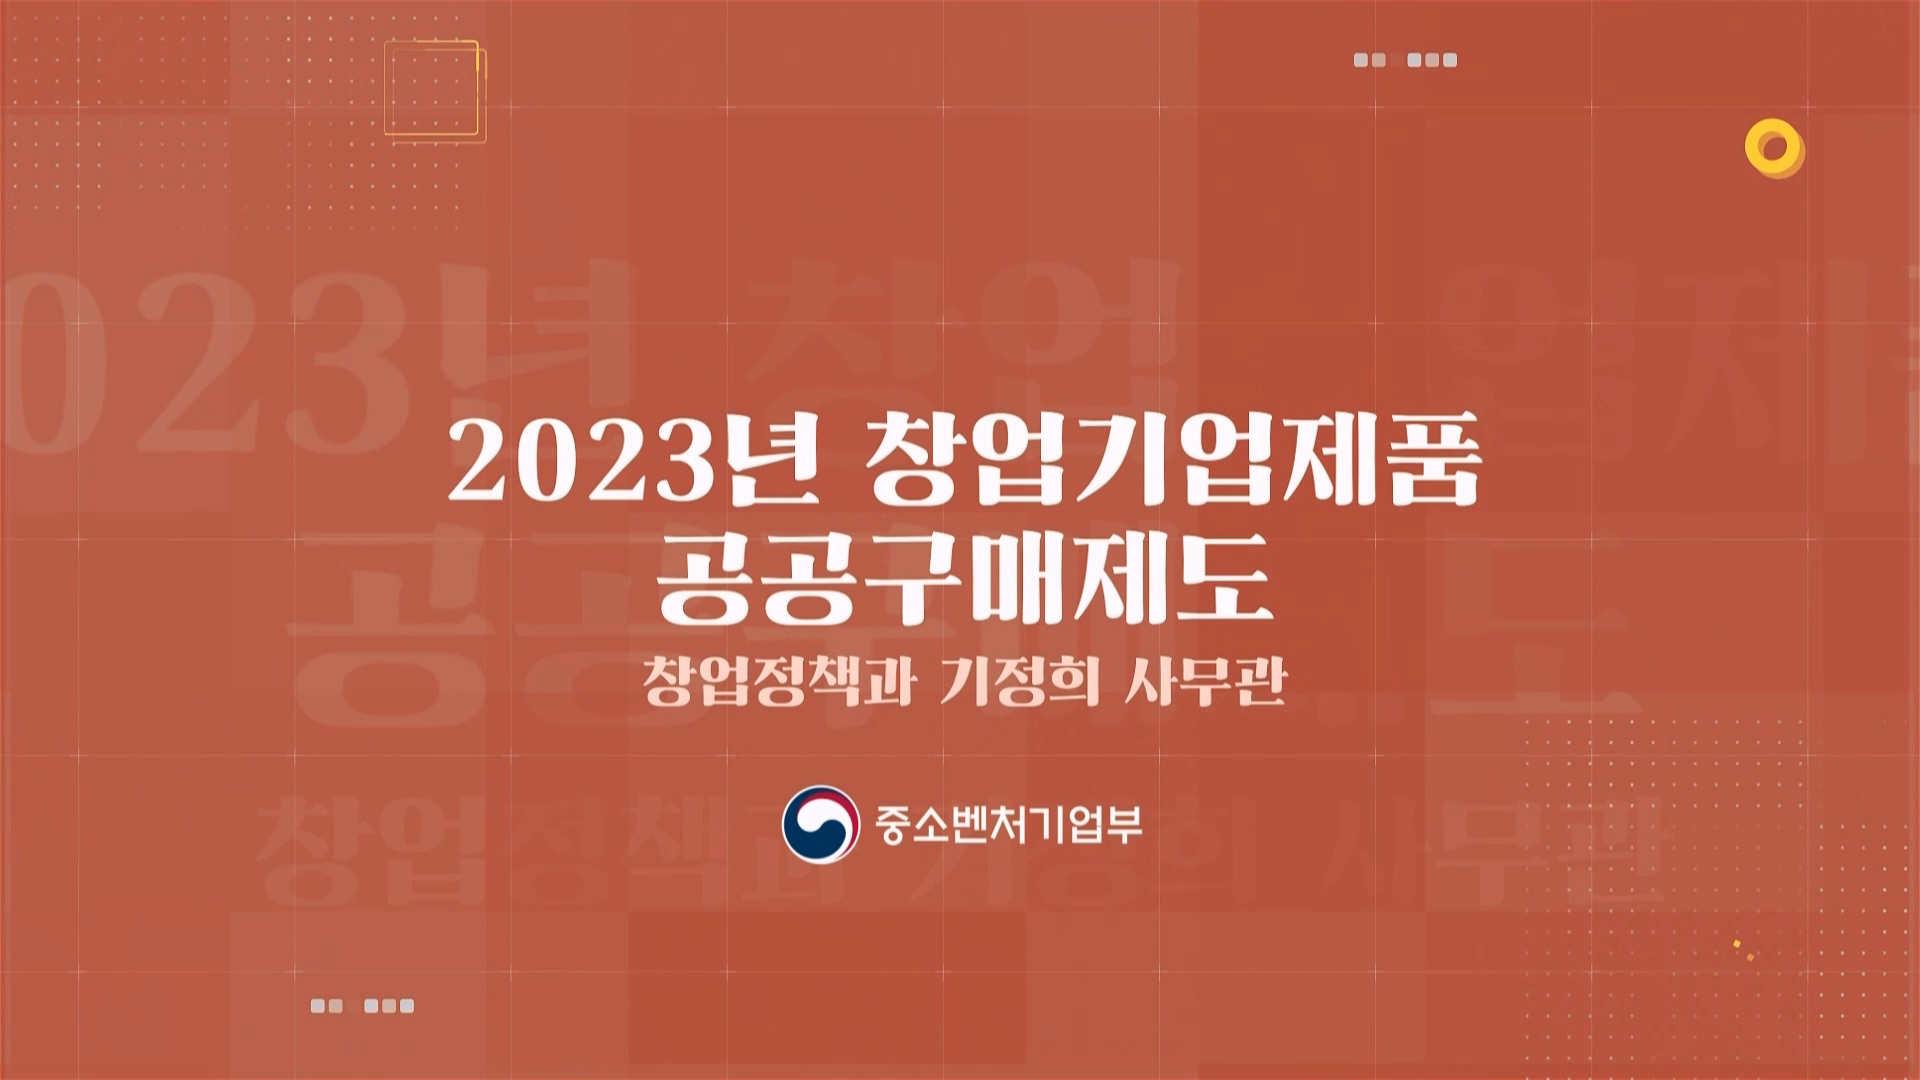 5. 2023년 창업기업제품 공공구매제도